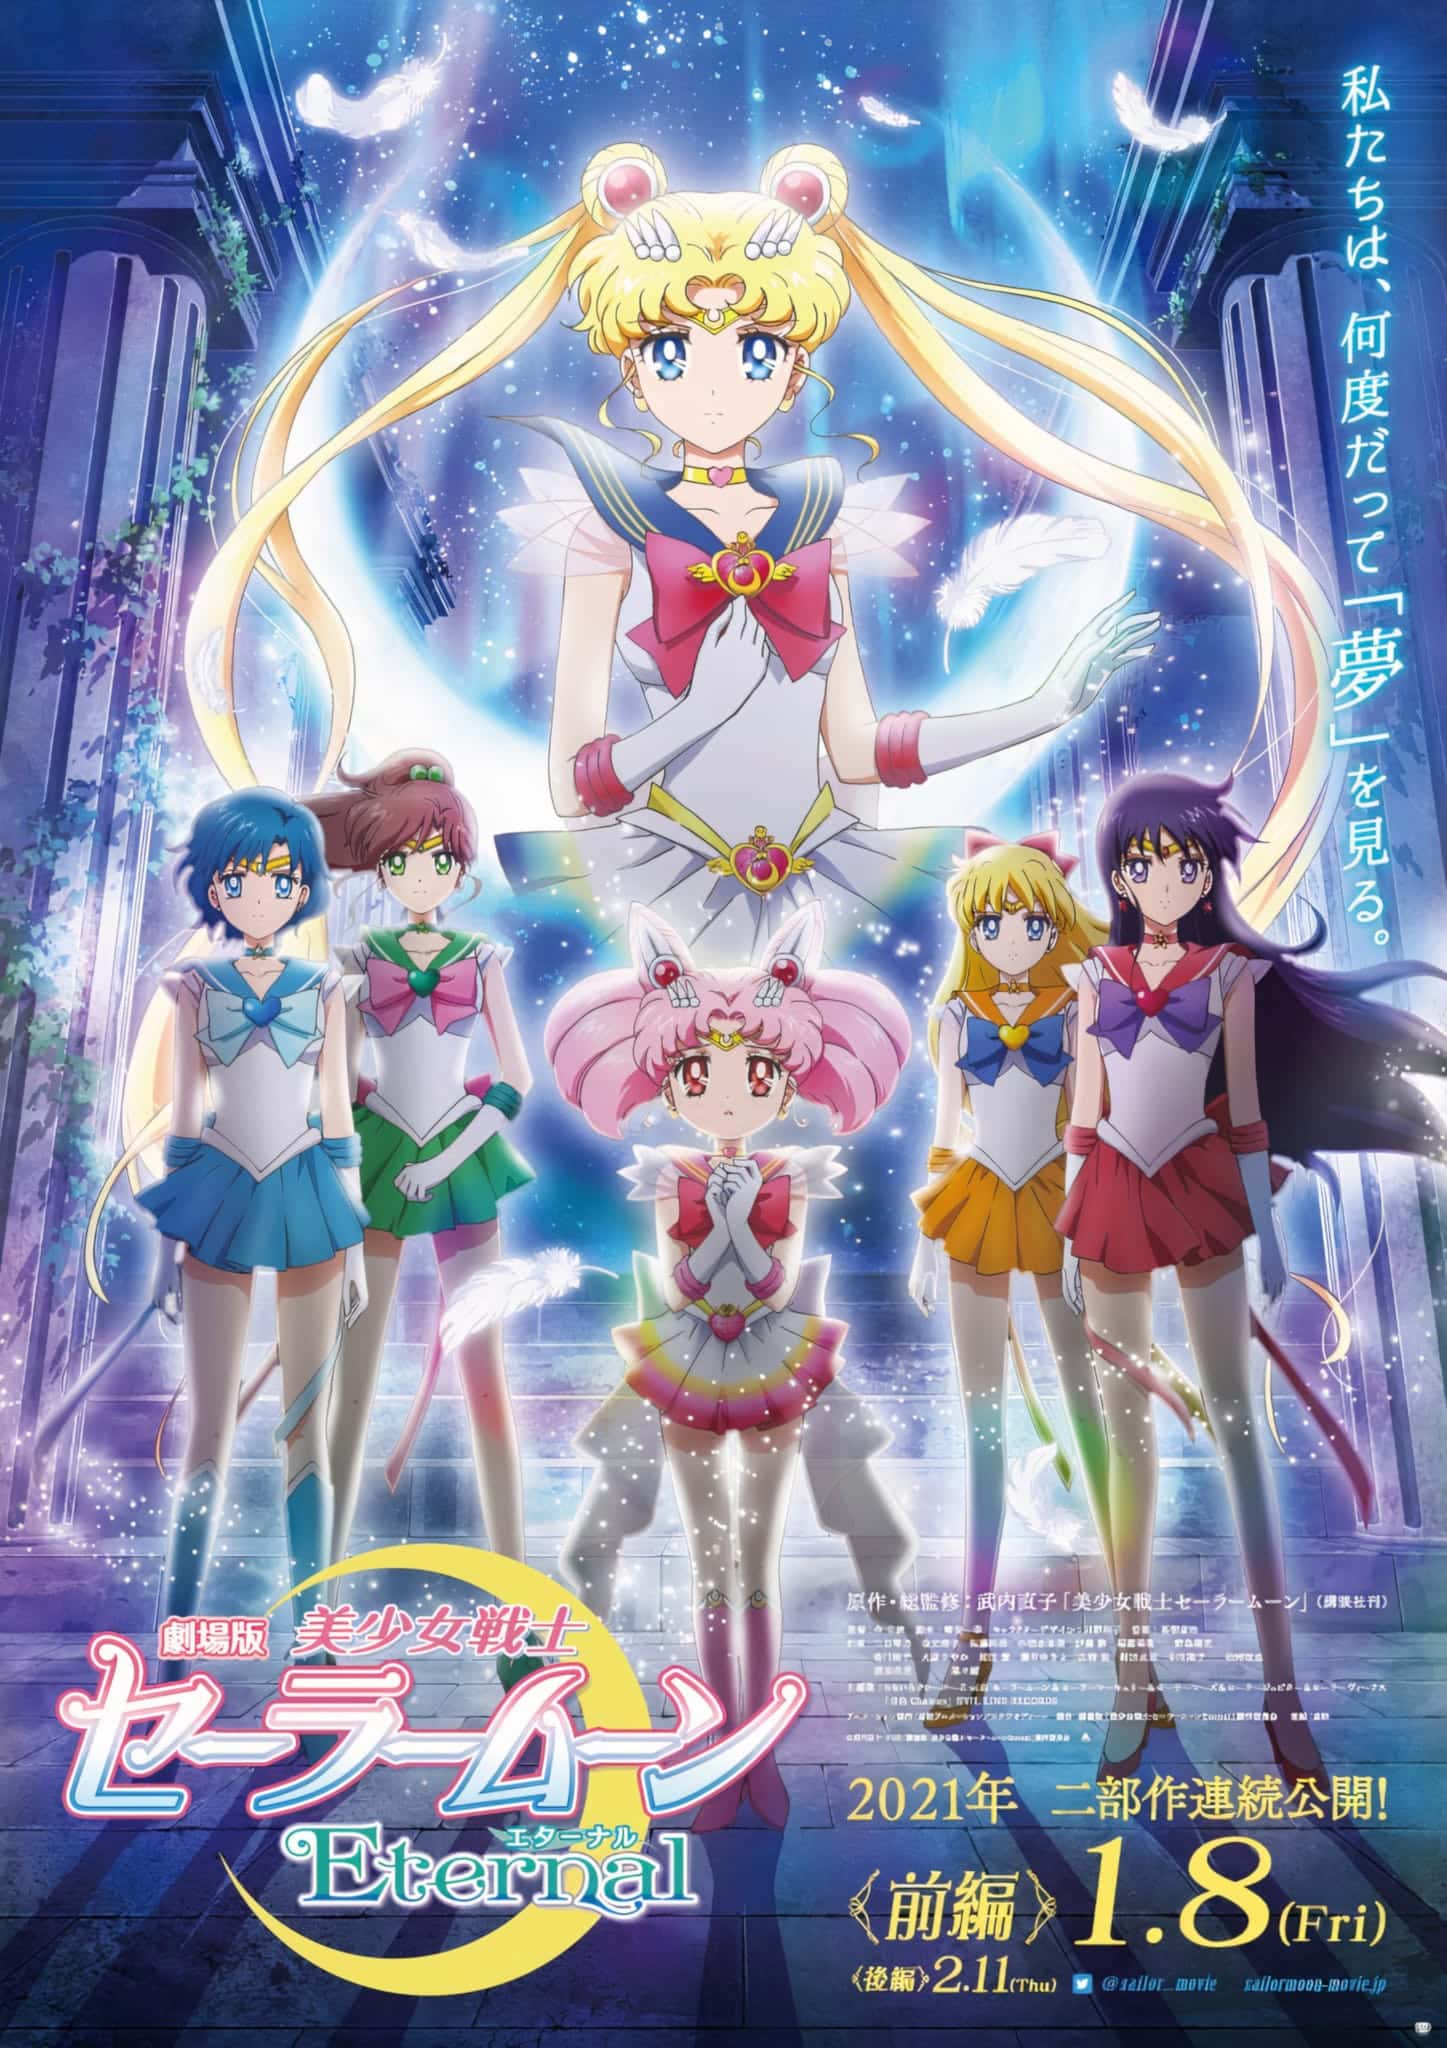 Annonce de Sailor Moon Eternal parmi les animes de hiver 2021